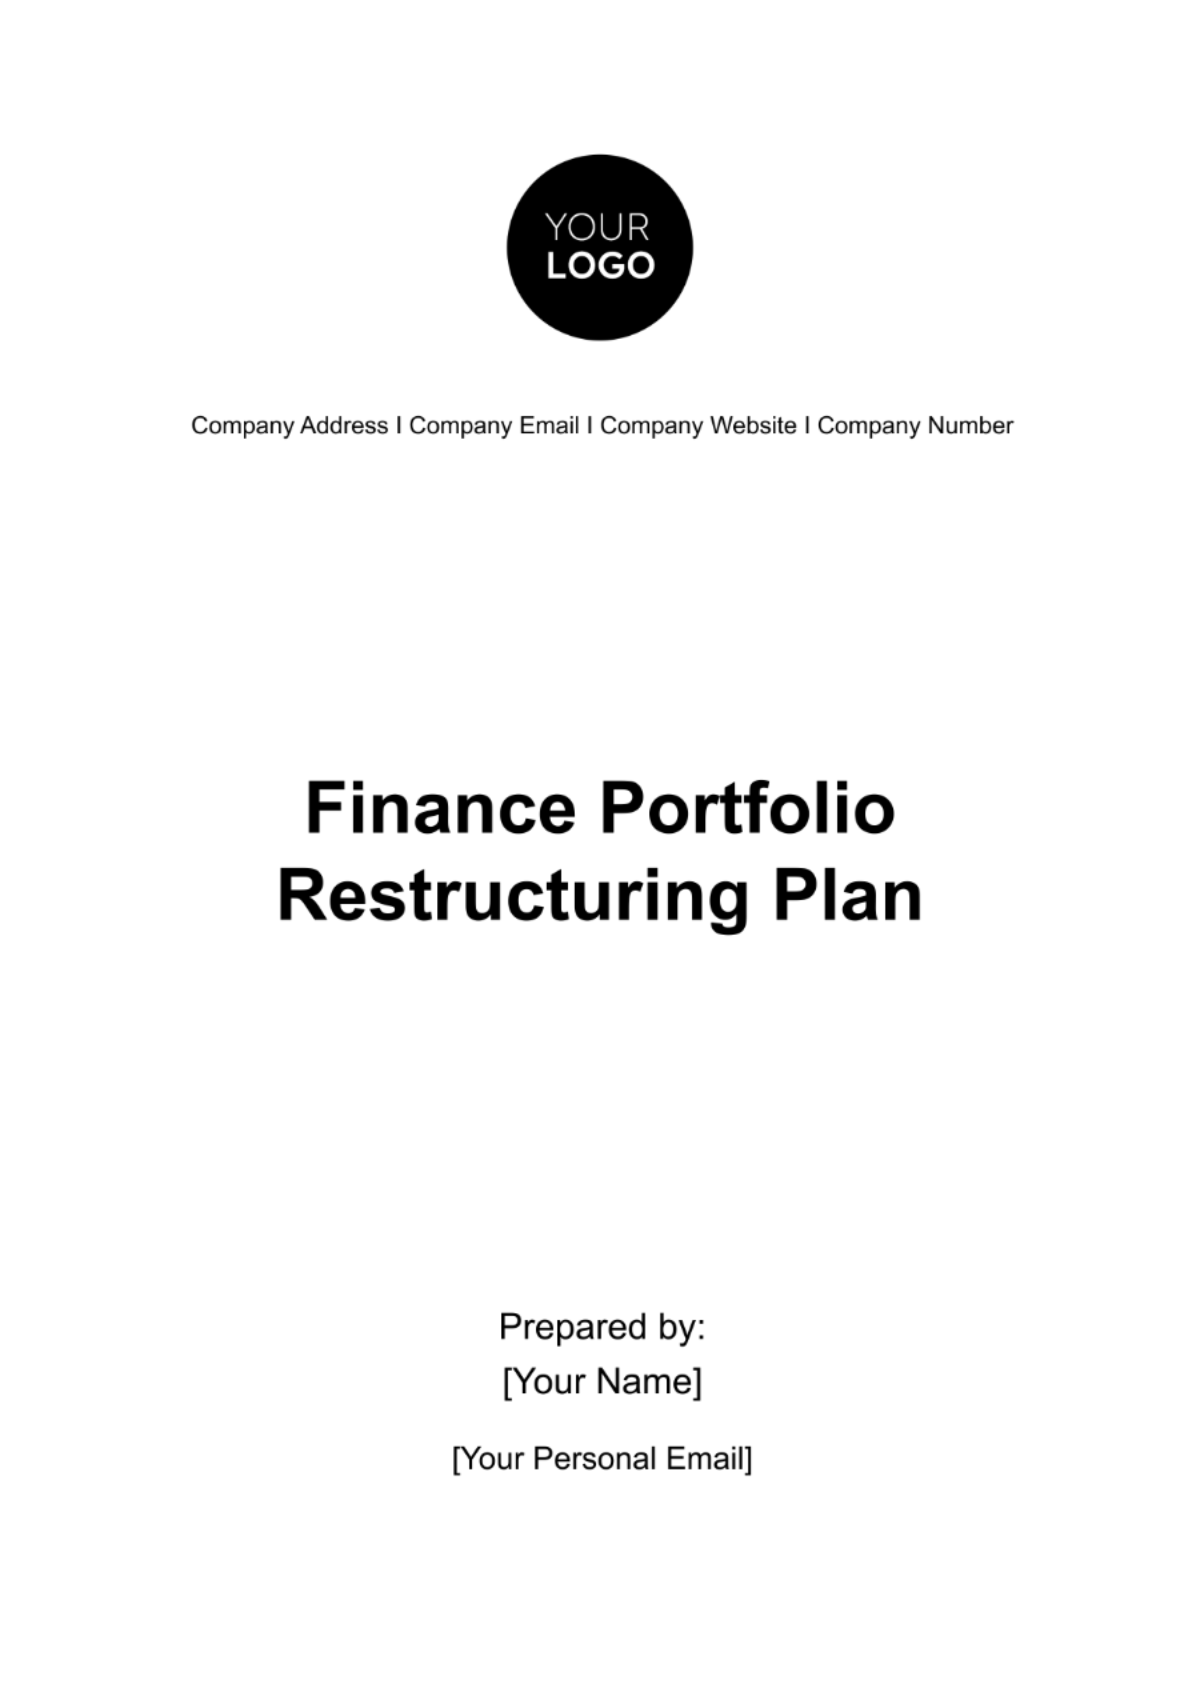 Finance Portfolio Restructuring Plan Template